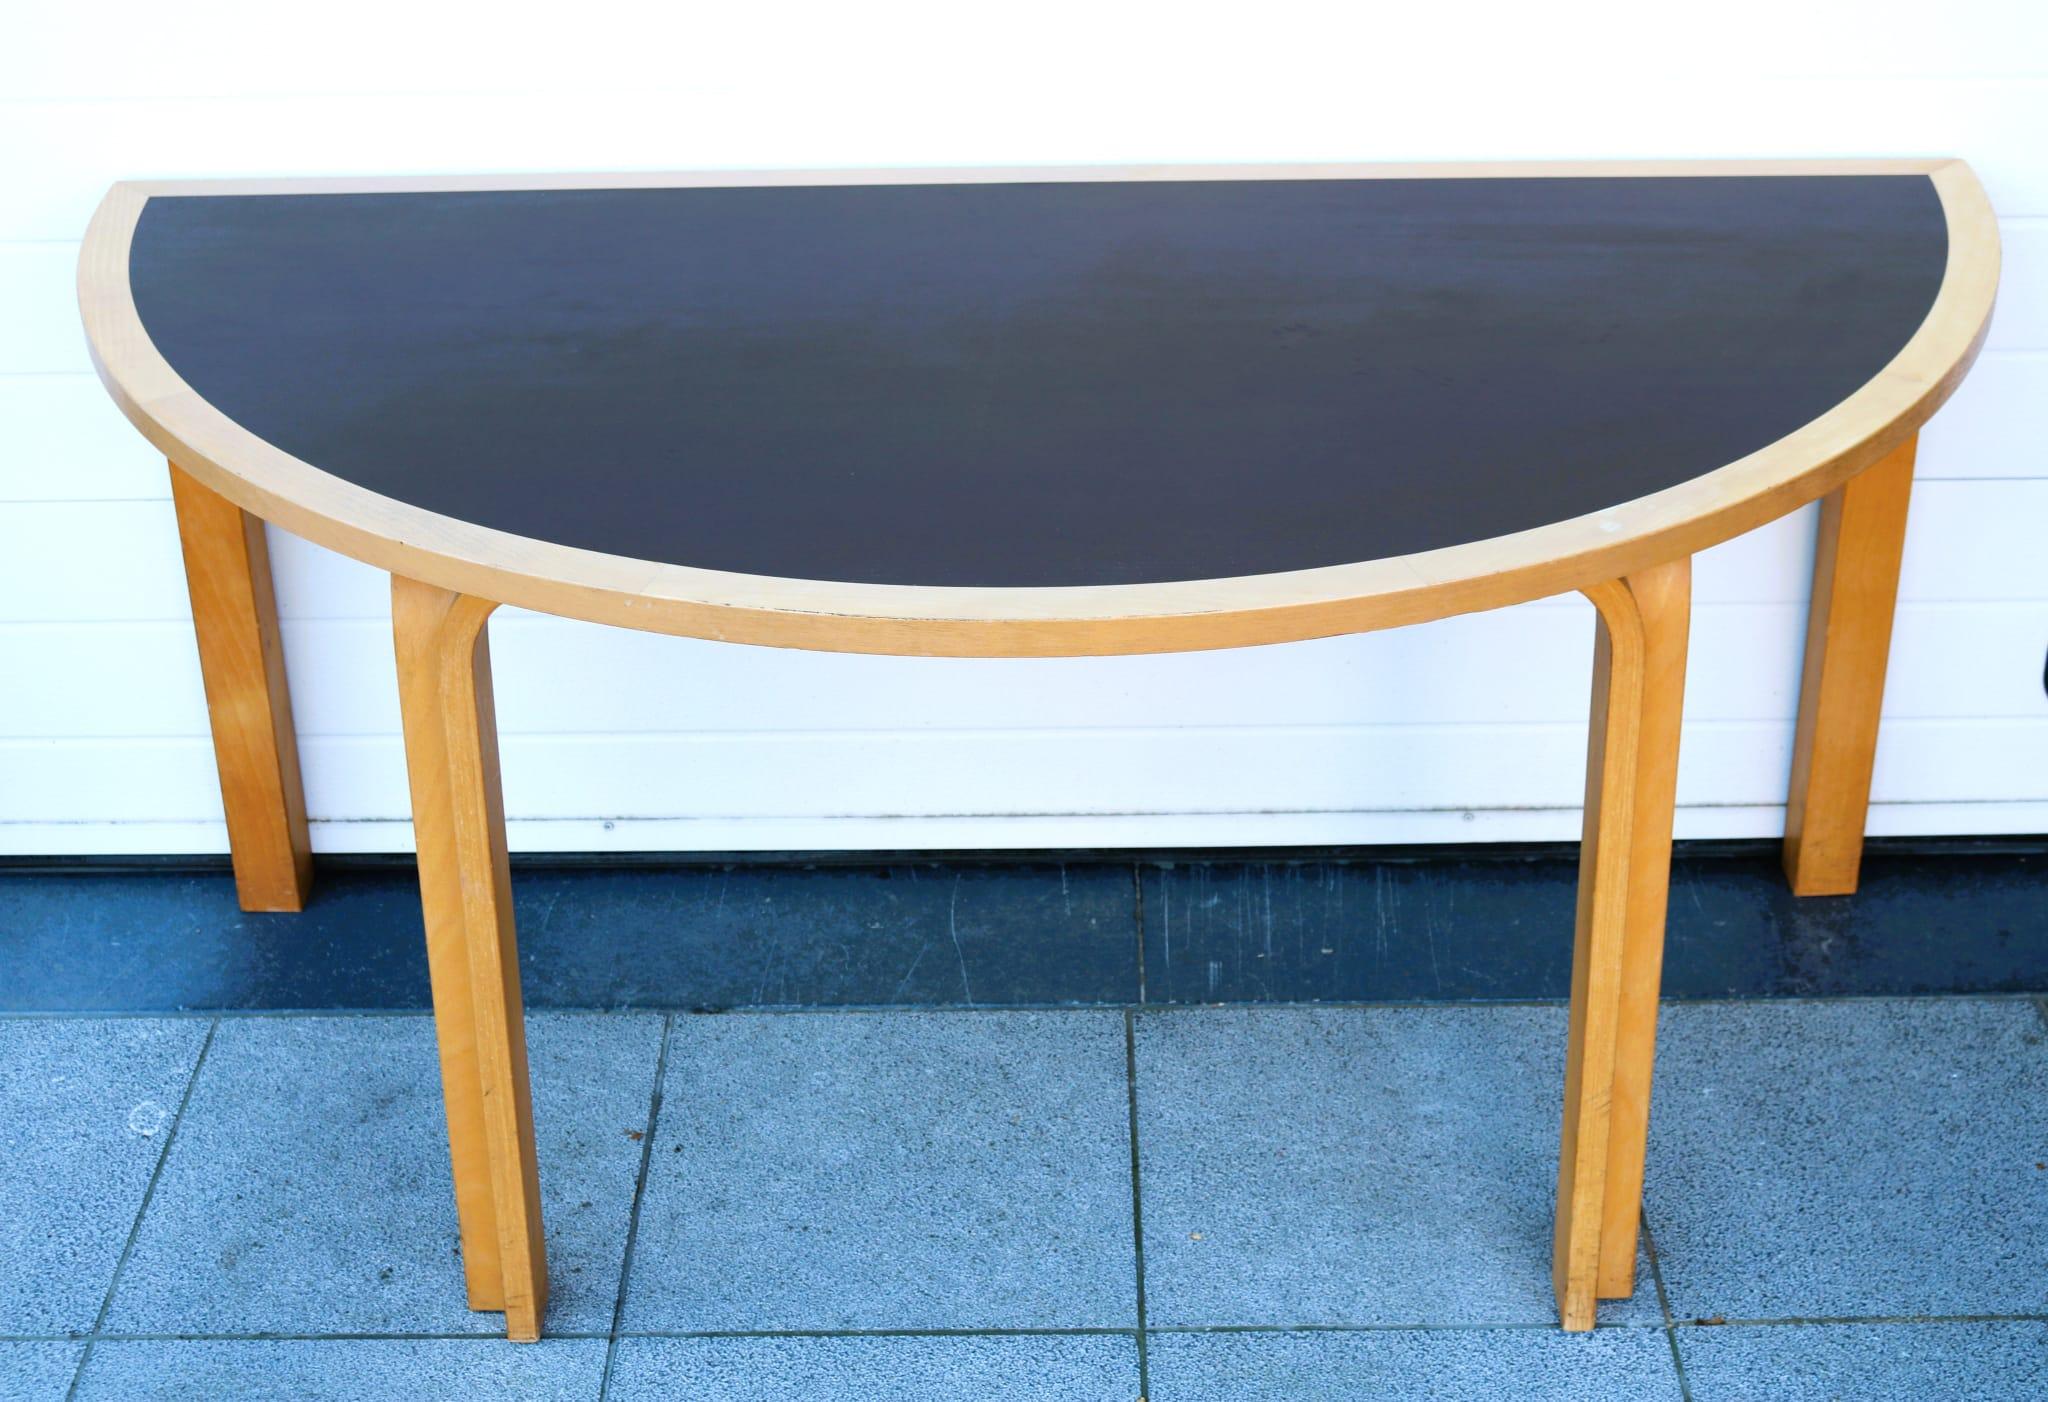 Halber Tisch, entworfen von Rud Thygesen&Johnny Sorenson für Magnus Olesen in den 1970er Jahren. Zwei verfügbar.